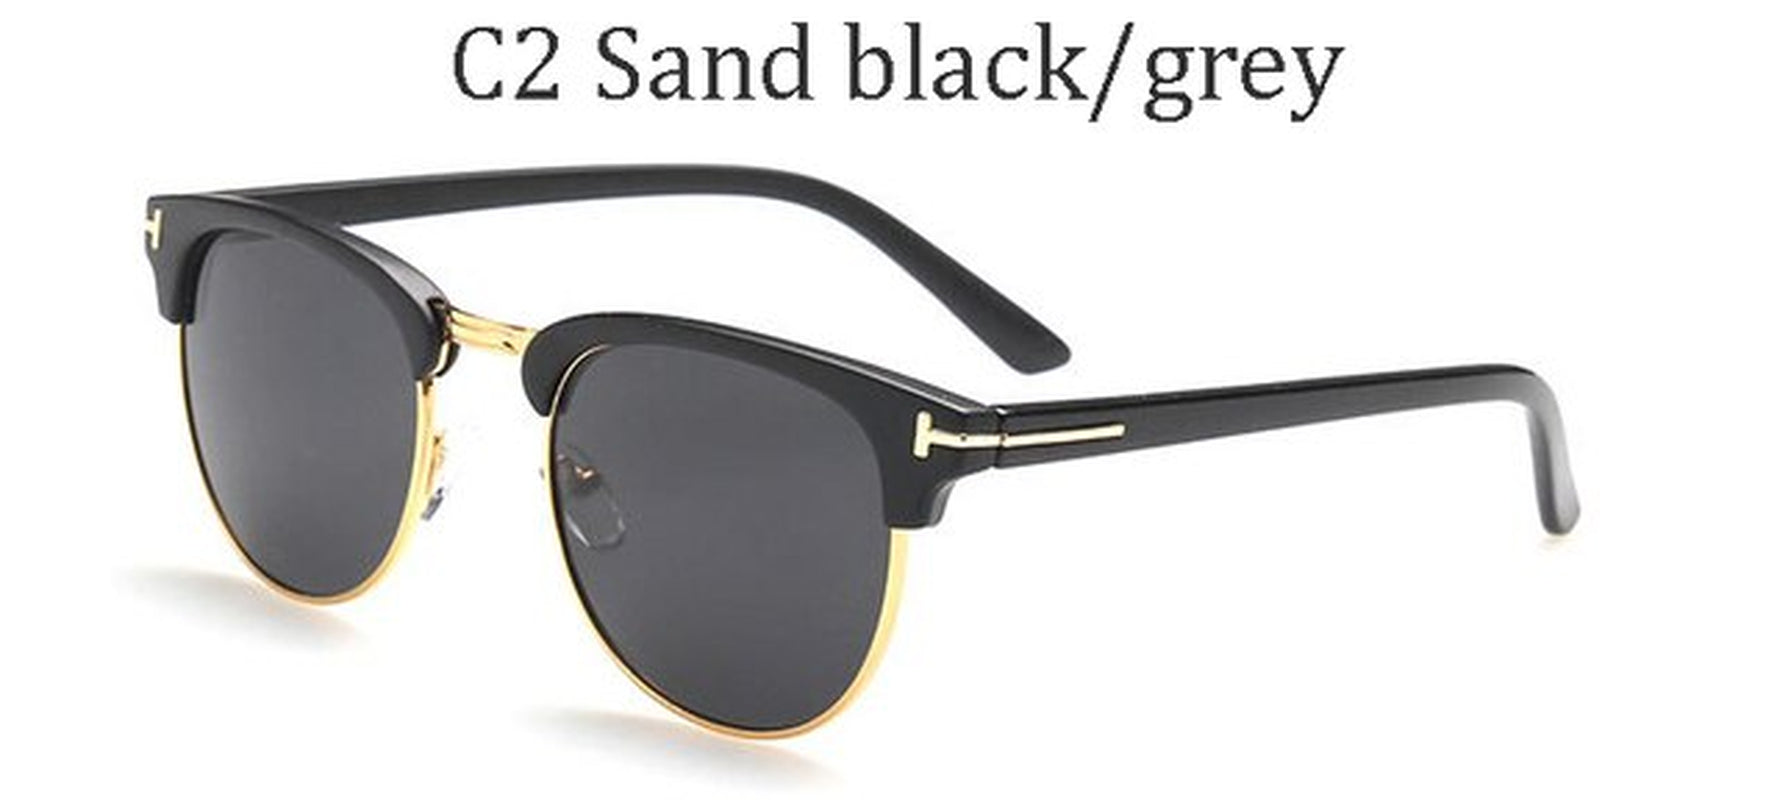 2021Jamesbond Men'S Sunglasses Brand Designer Sunglasses Women'S Super Star Celebrity Sunglasses Driving Tom Sunglasses for Men